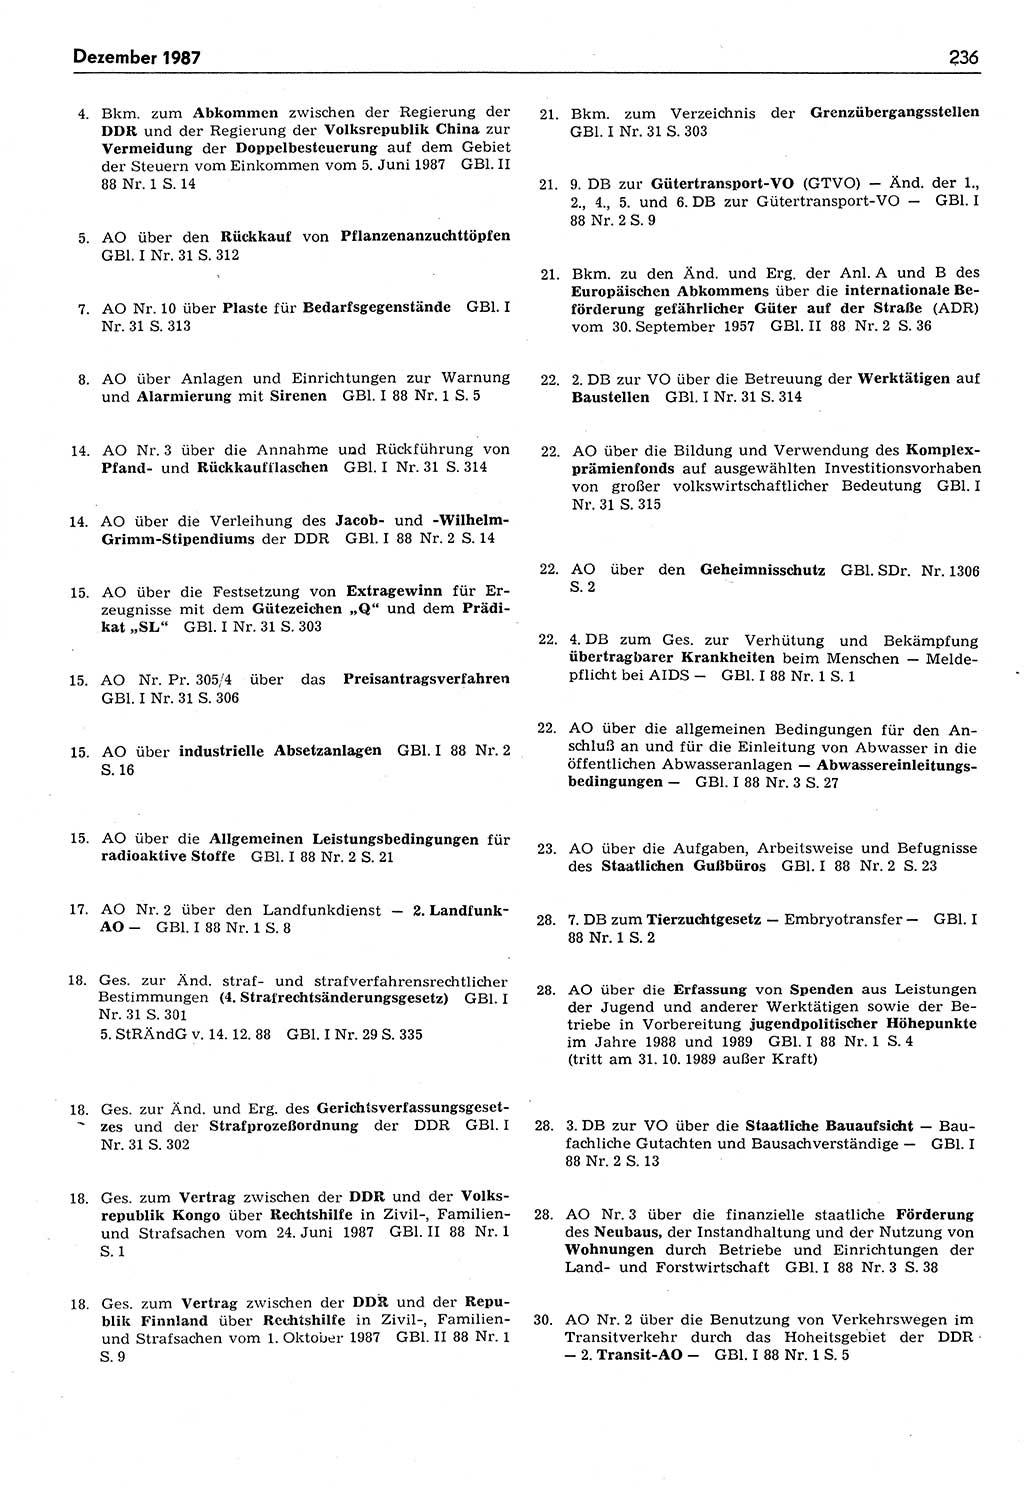 Das geltende Recht der Deutschen Demokratischen Republik (DDR) 1949-1988, Seite 236 (Gelt. R. DDR 1949-1988, S. 236)